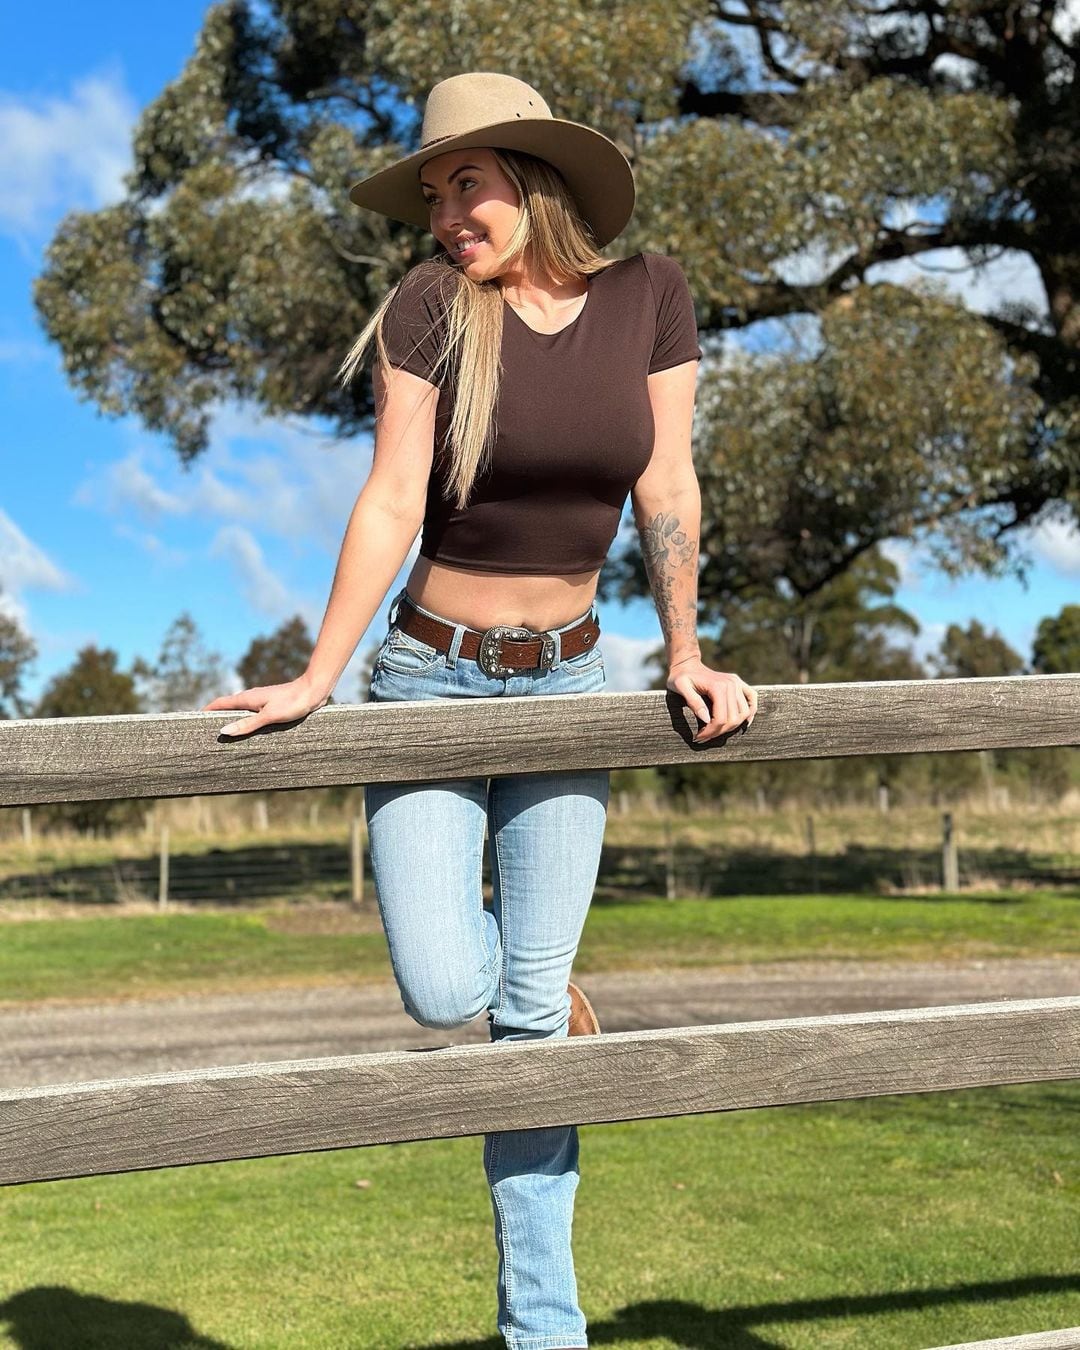 Honey es una famosa modelo australiana reconocida por subir videos en OnlyFans vestida como campesina